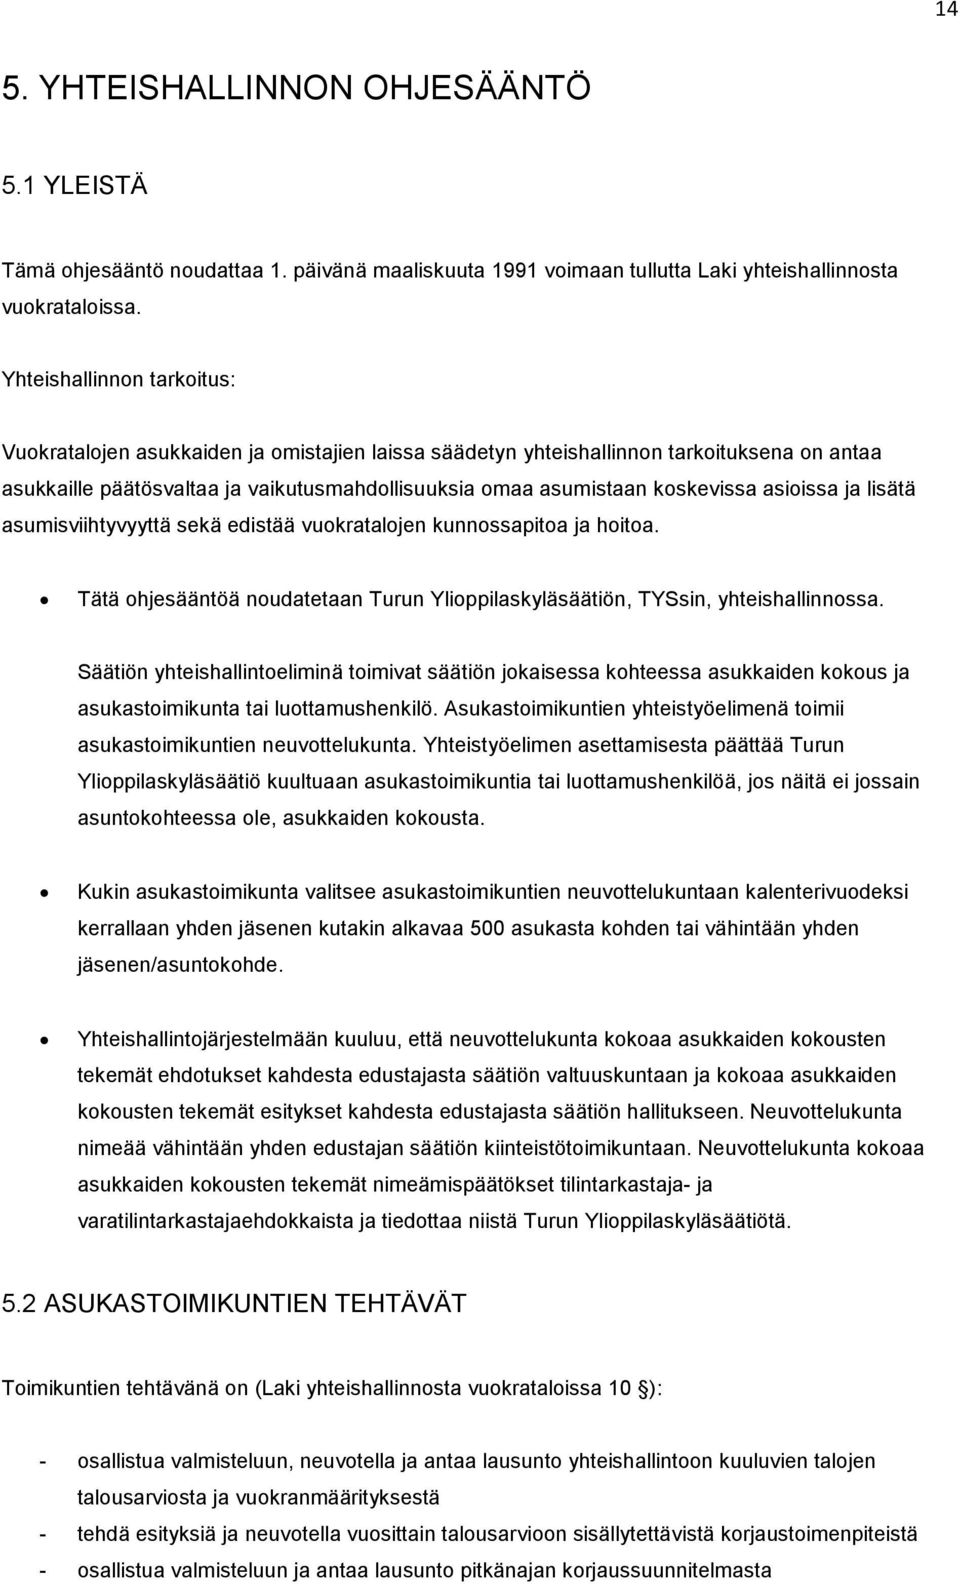 asioissa ja lisätä asumisviihtyvyyttä sekä edistää vuokratalojen kunnossapitoa ja hoitoa. Tätä ohjesääntöä noudatetaan Turun Ylioppilaskyläsäätiön, TYSsin, yhteishallinnossa.